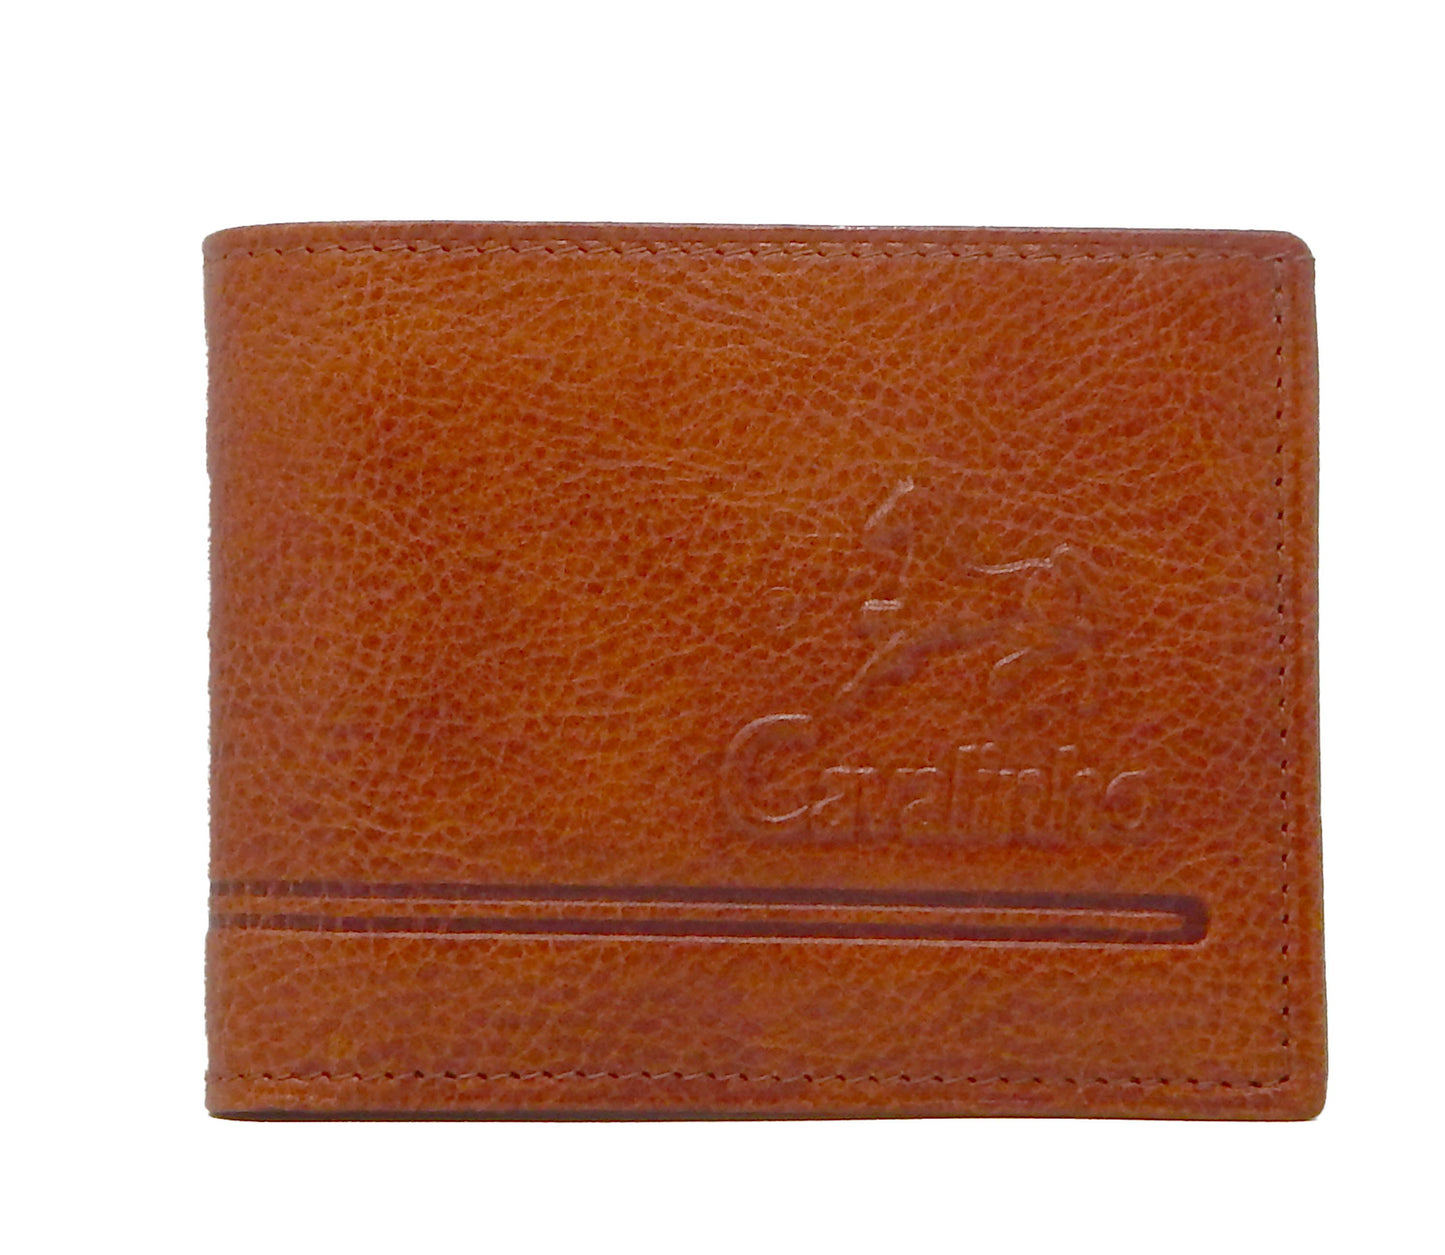 Cavalinho Men's Trifold Leather Wallet - SaddleBrown - 28610517.13.99_2